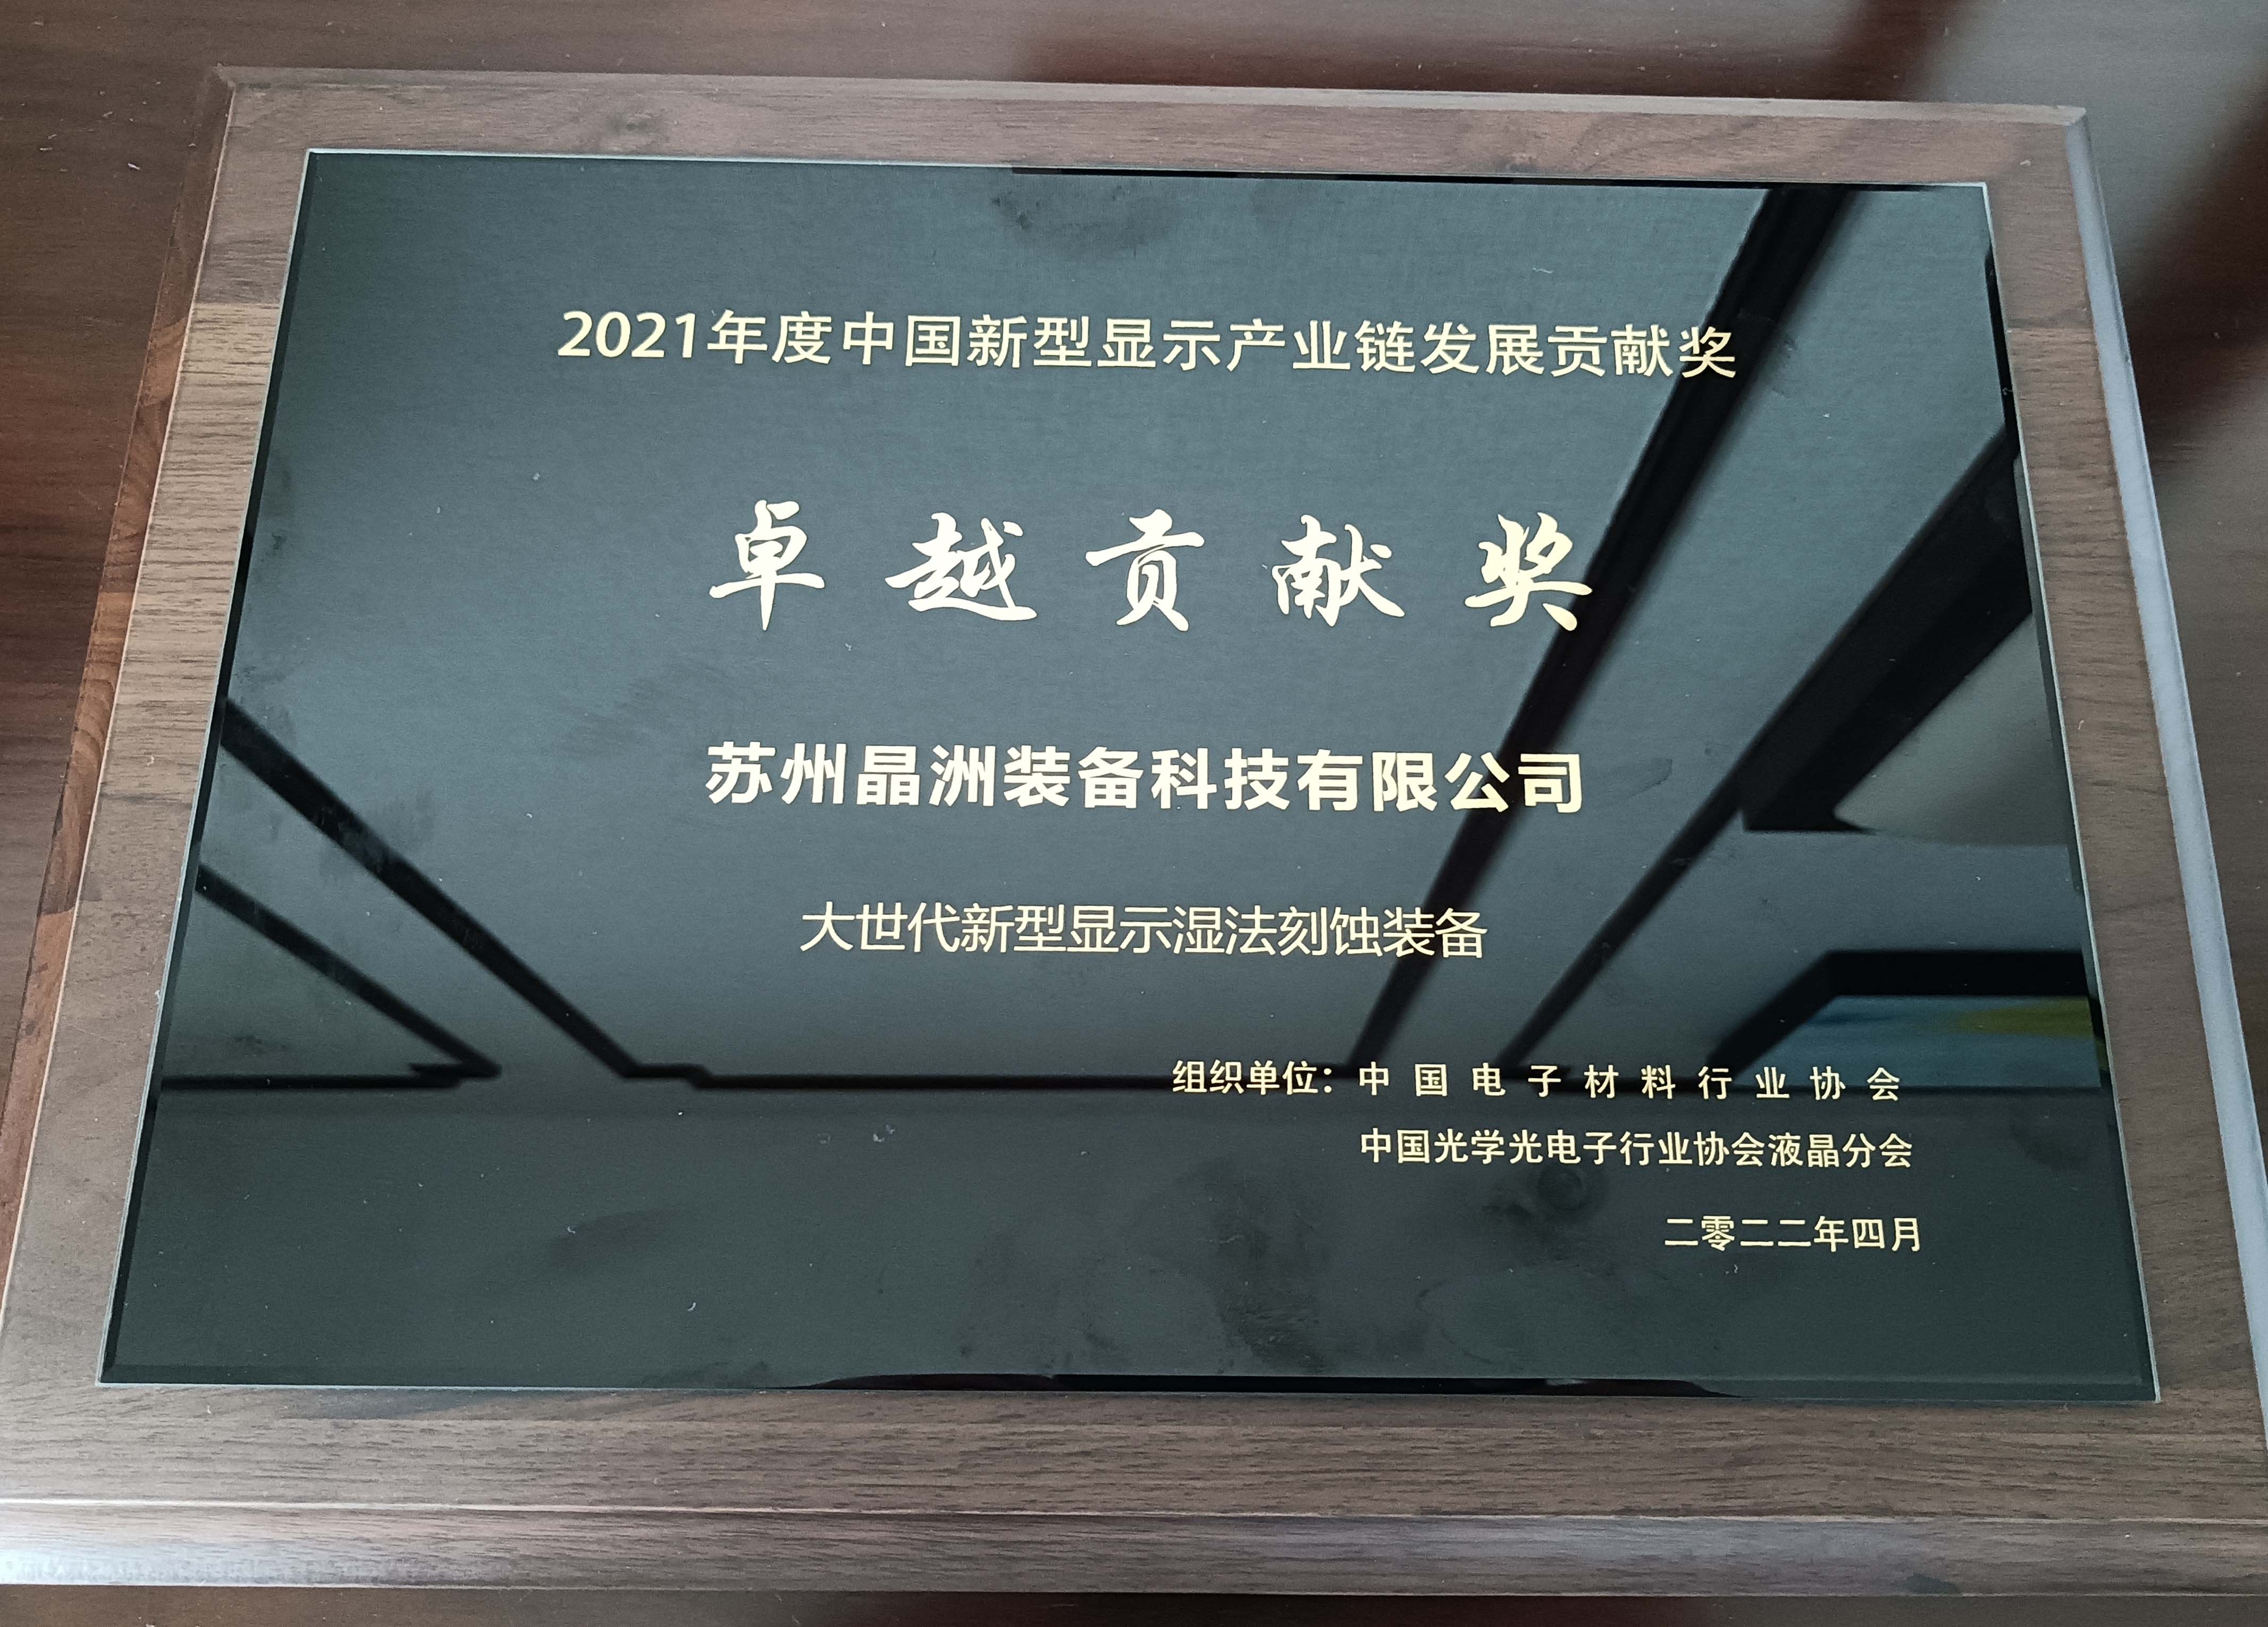 伟德国际victor1946装备荣获2021年度中国新型显示工业链卓越孝顺奖并揭晓主题演讲